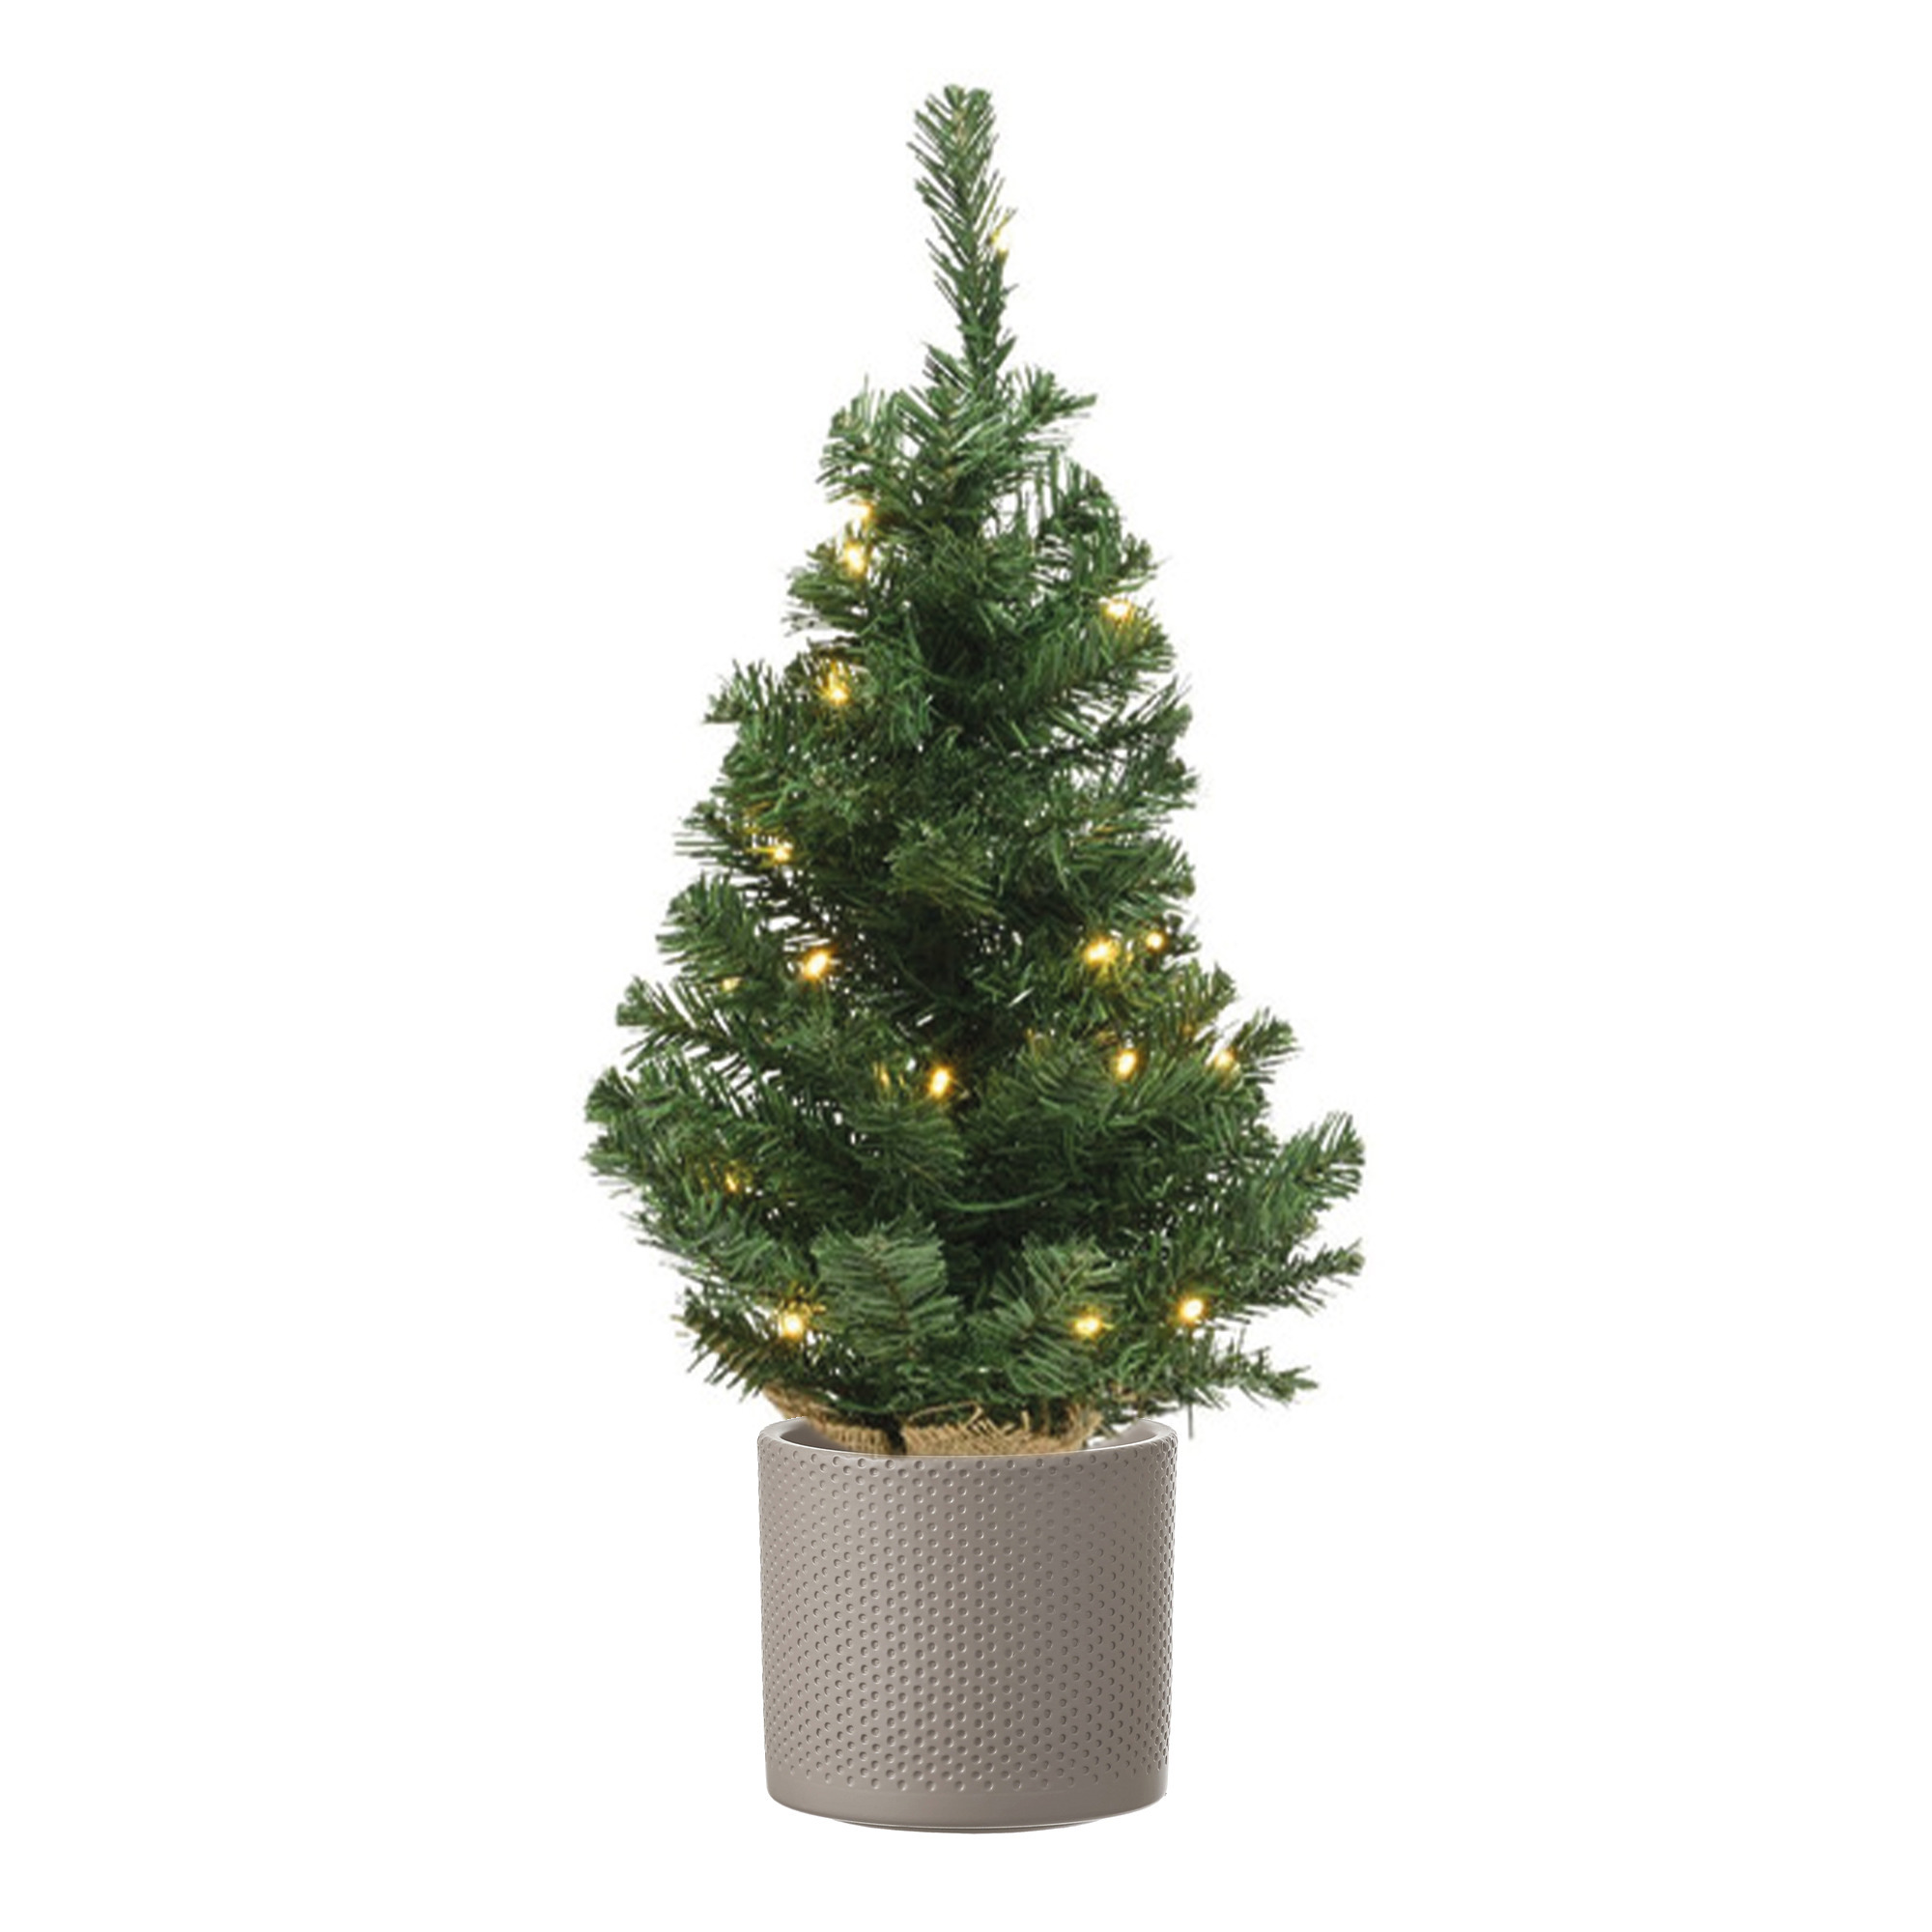 Volle kunst kerstboom 75 cm met verlichting inclusief taupe pot